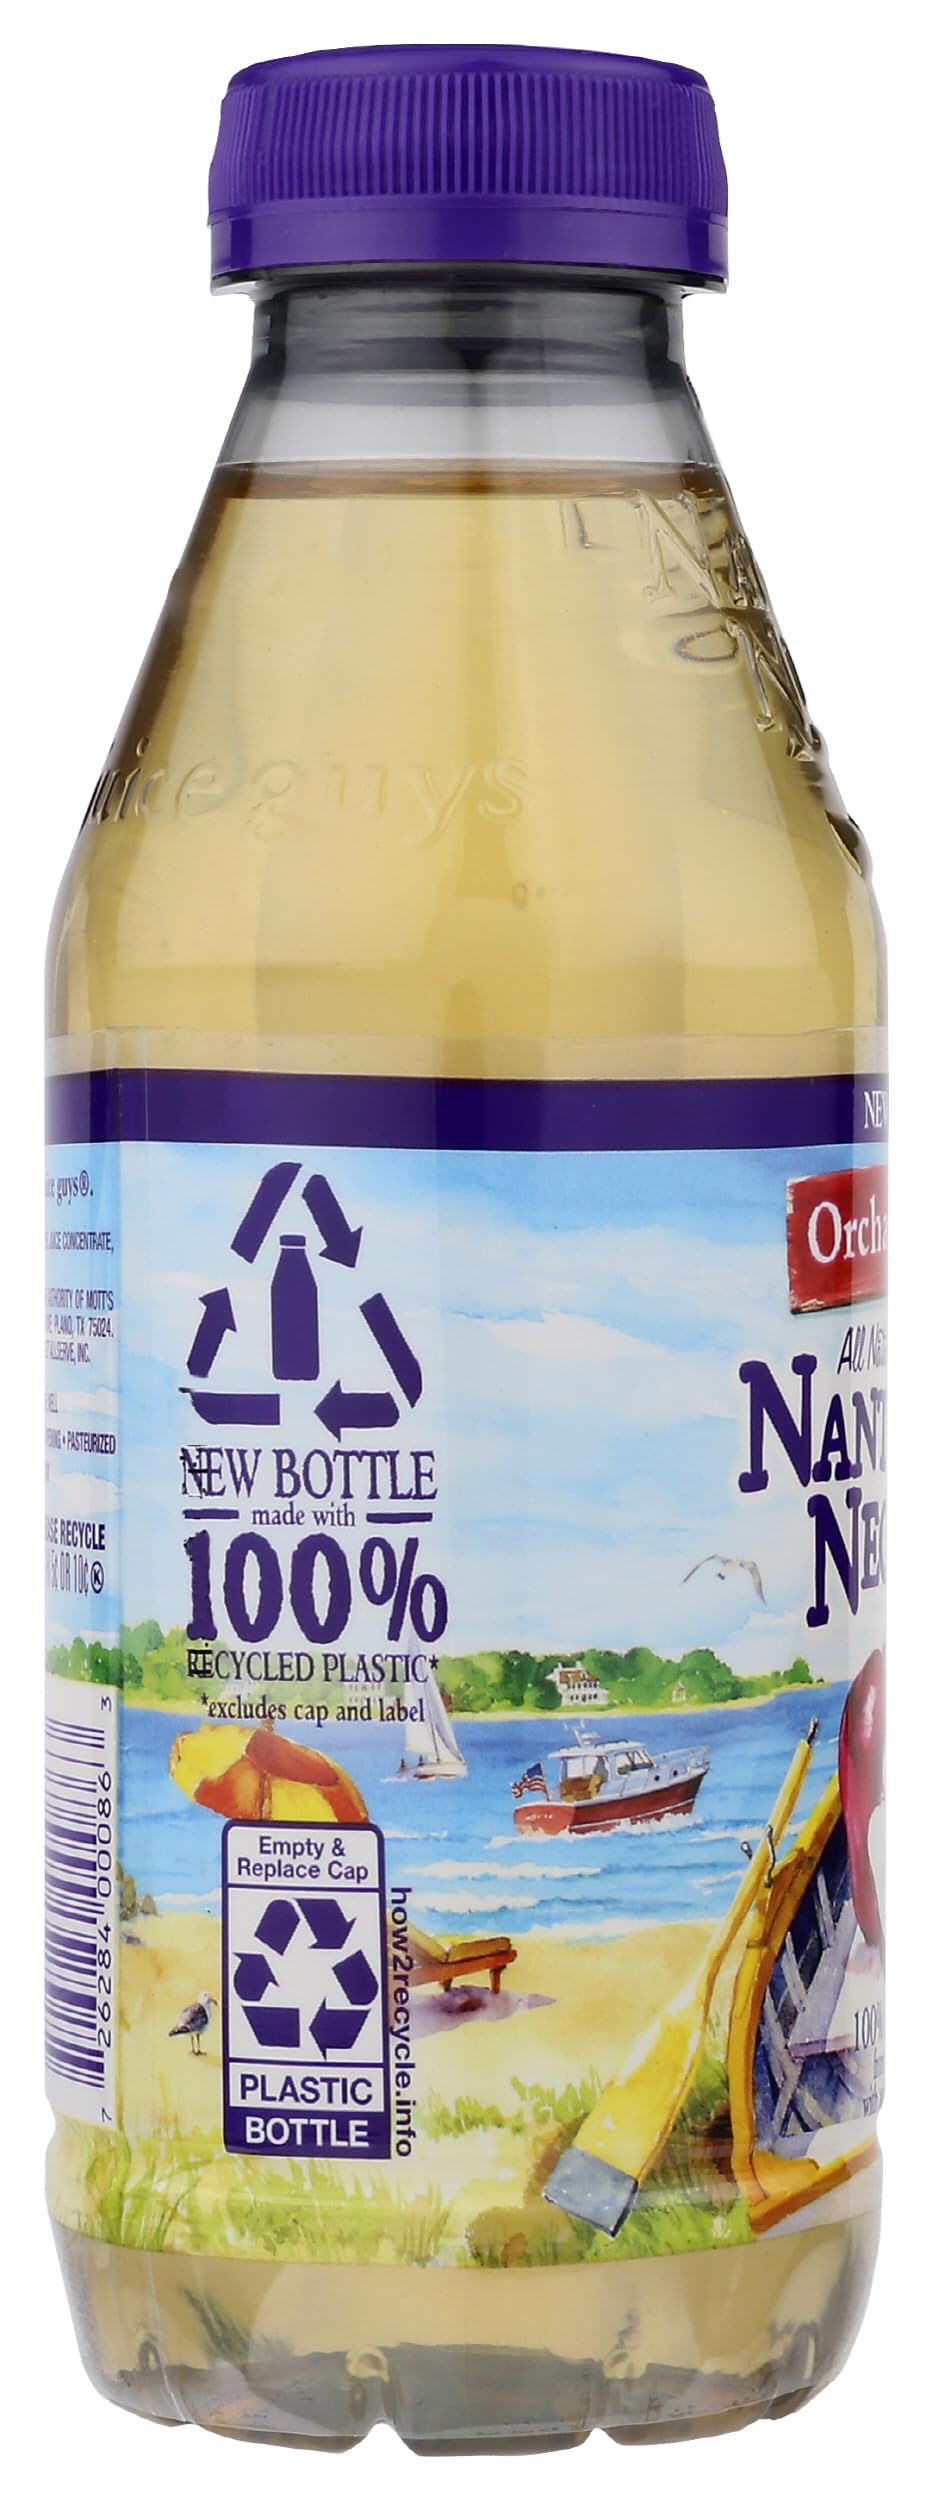 NANTUCKET NECTARS Orchard Apple Juice, 15.9 FZ